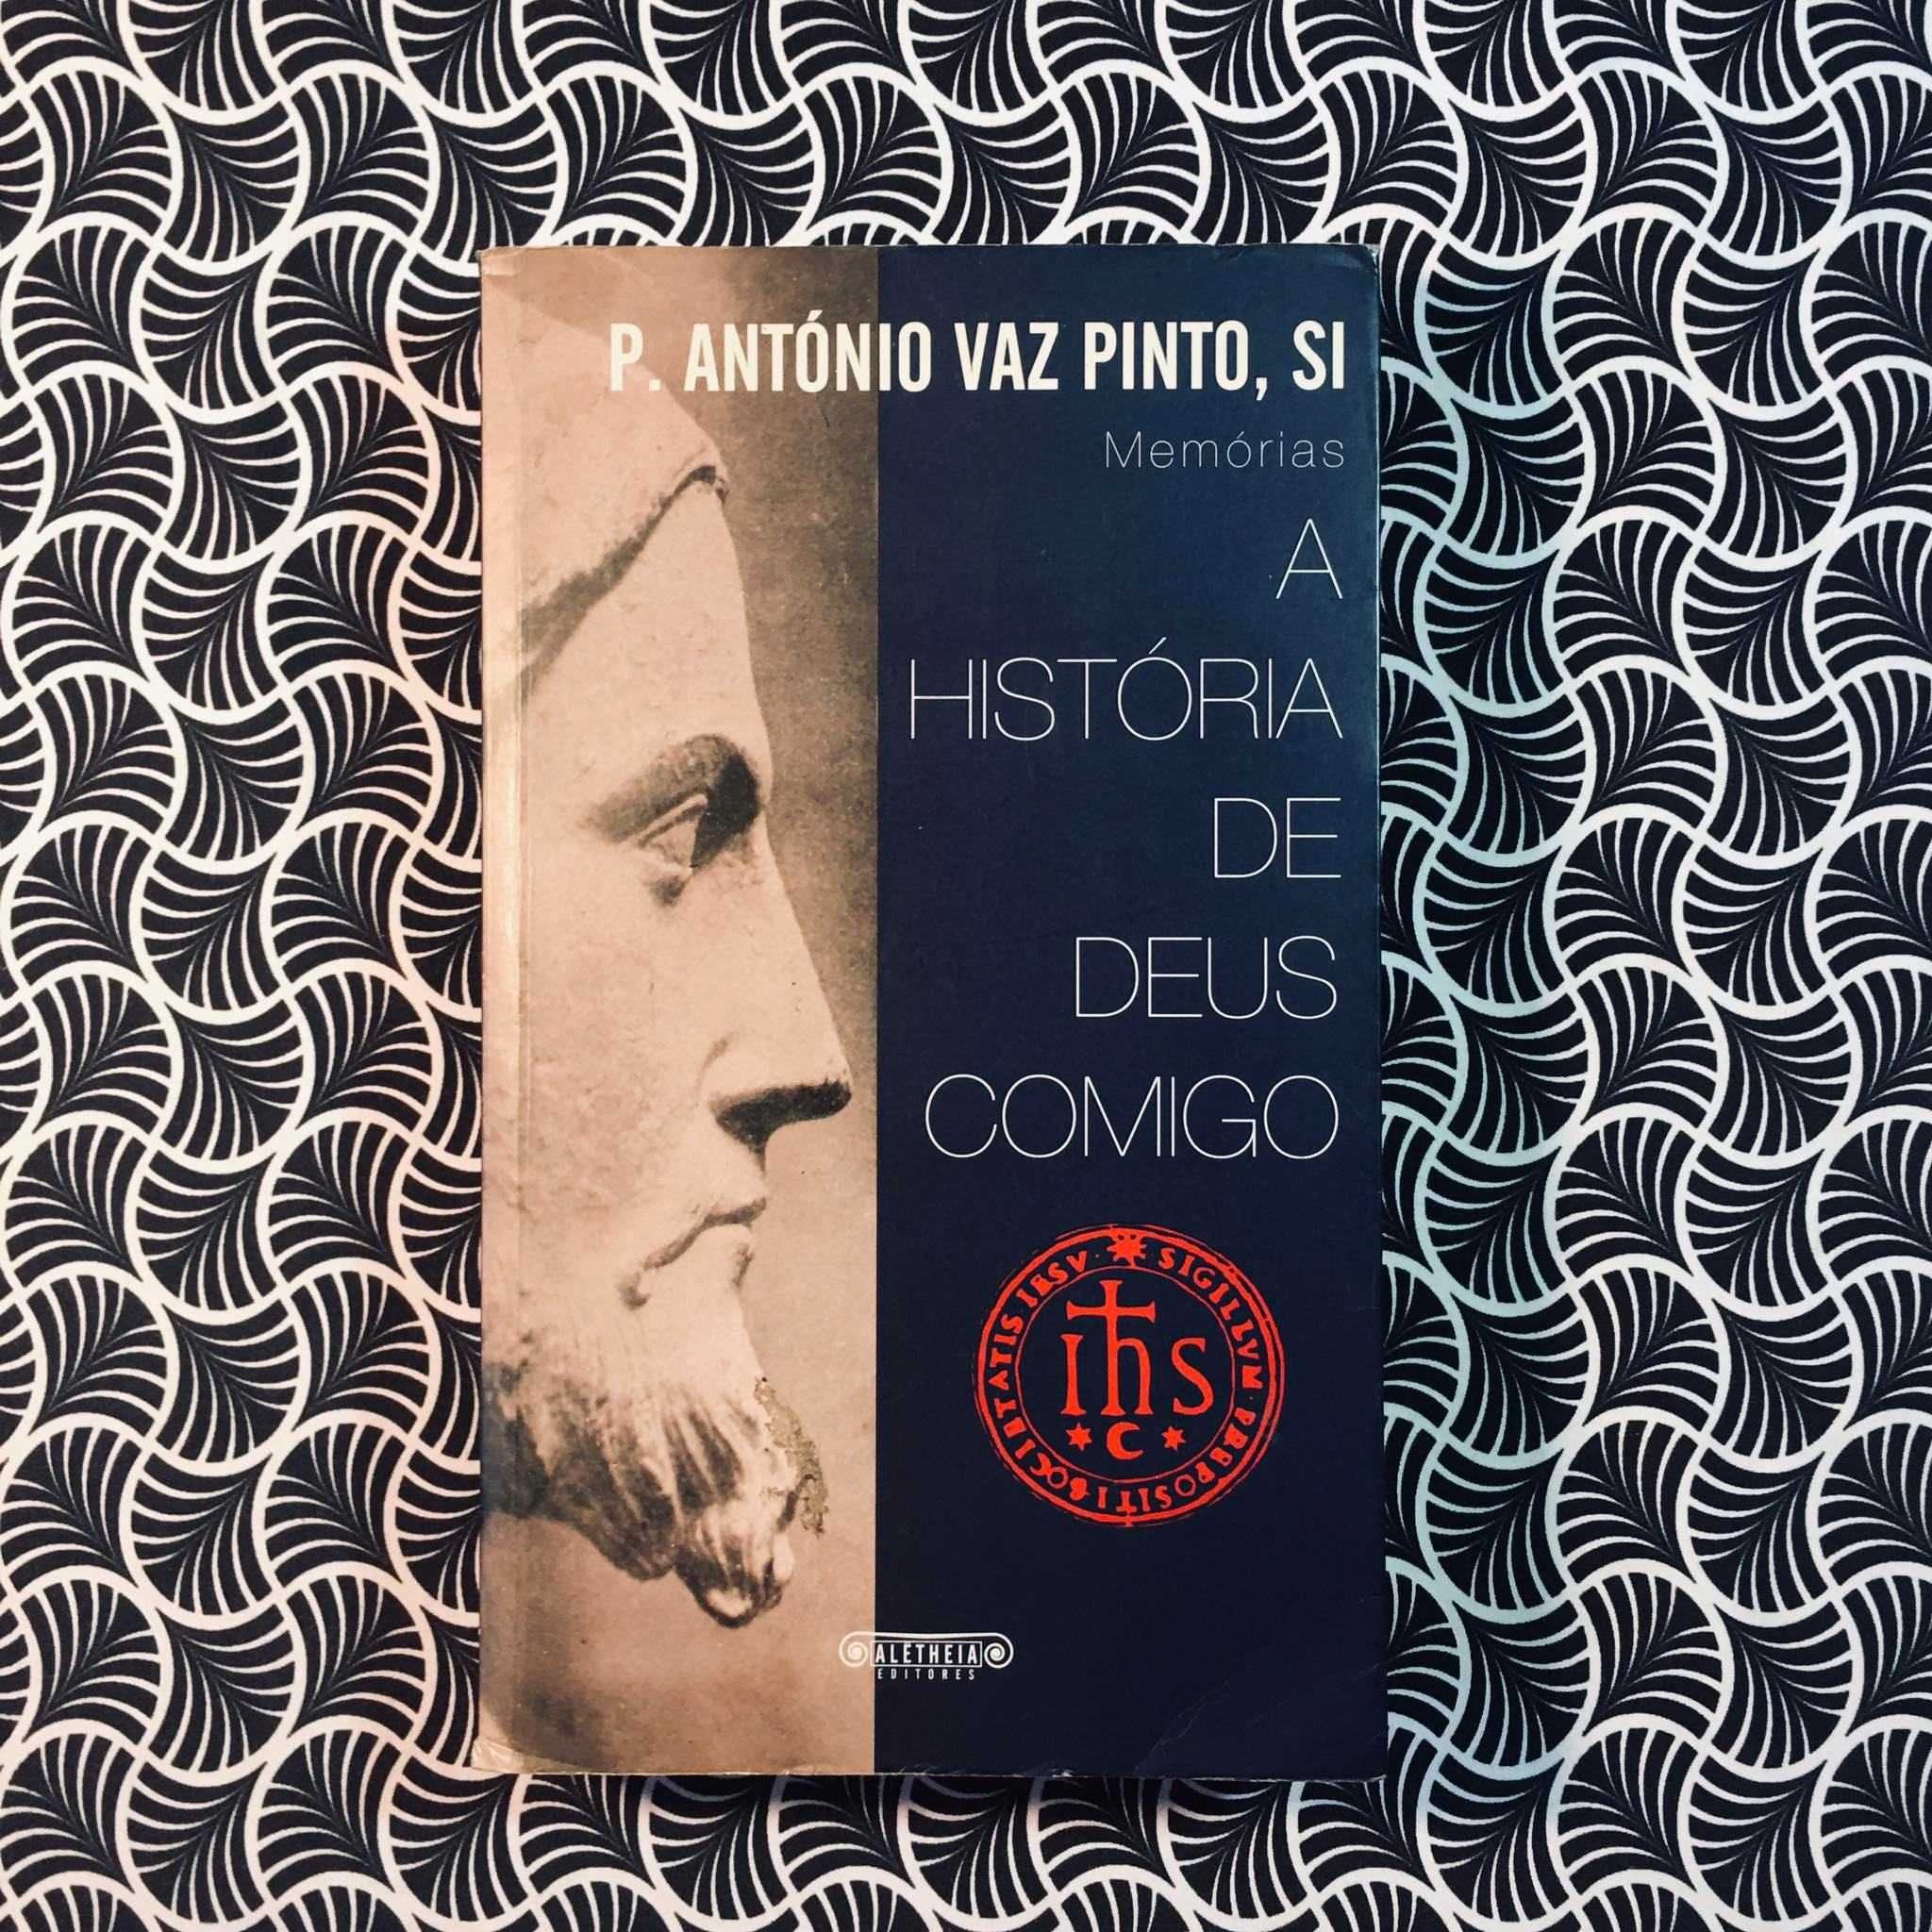 A História de Deus Comigo - Padre António Vaz Pinto